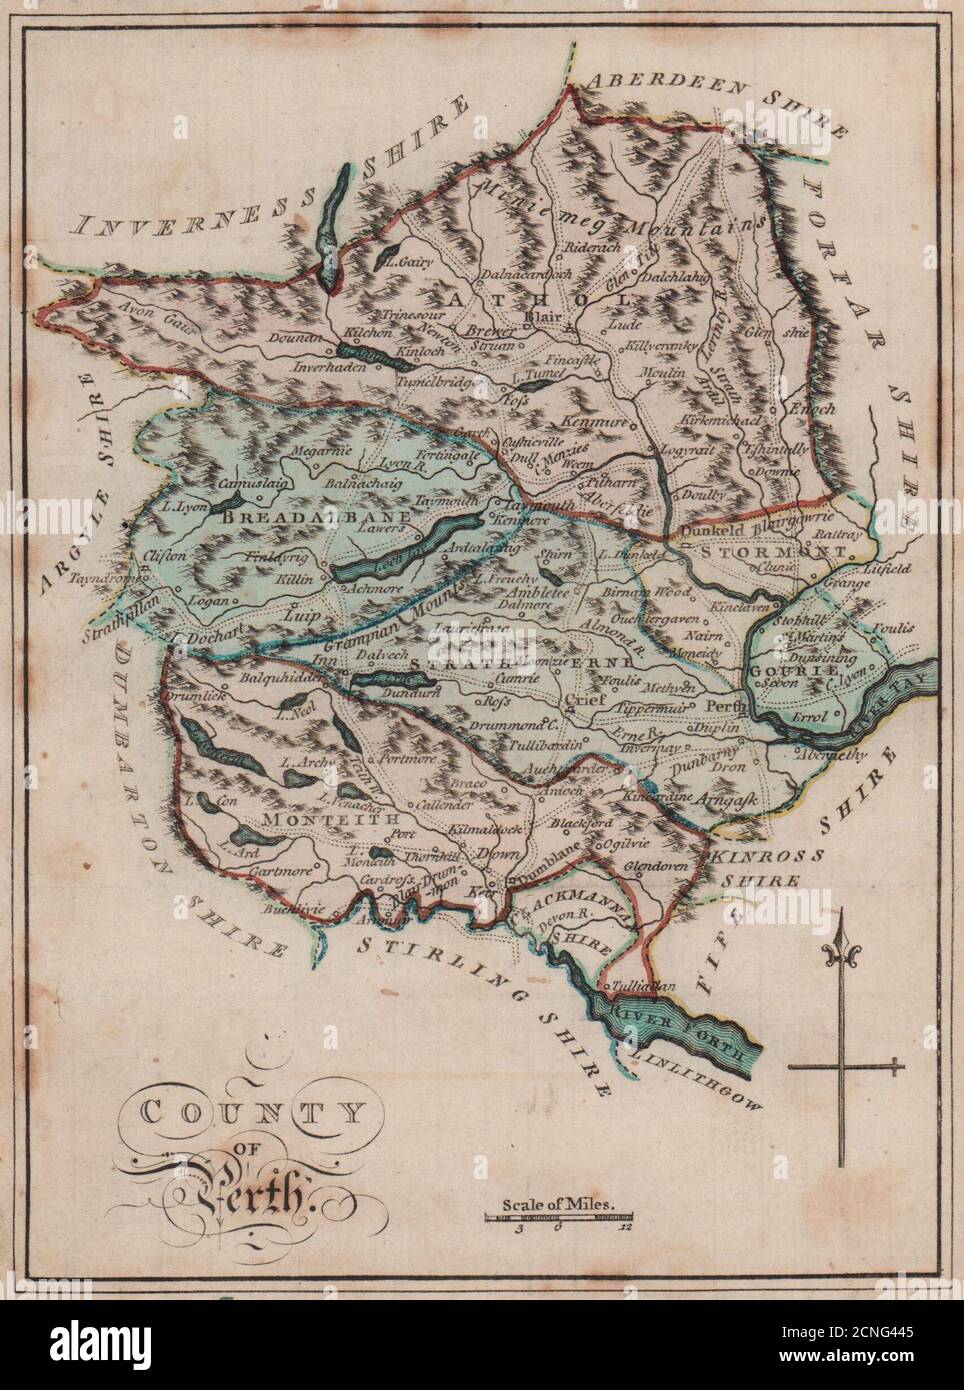 Condado de Perth. Perthshire. SAYER / ARMSTRONG 1787 antiguo mapa gráfico Foto de stock